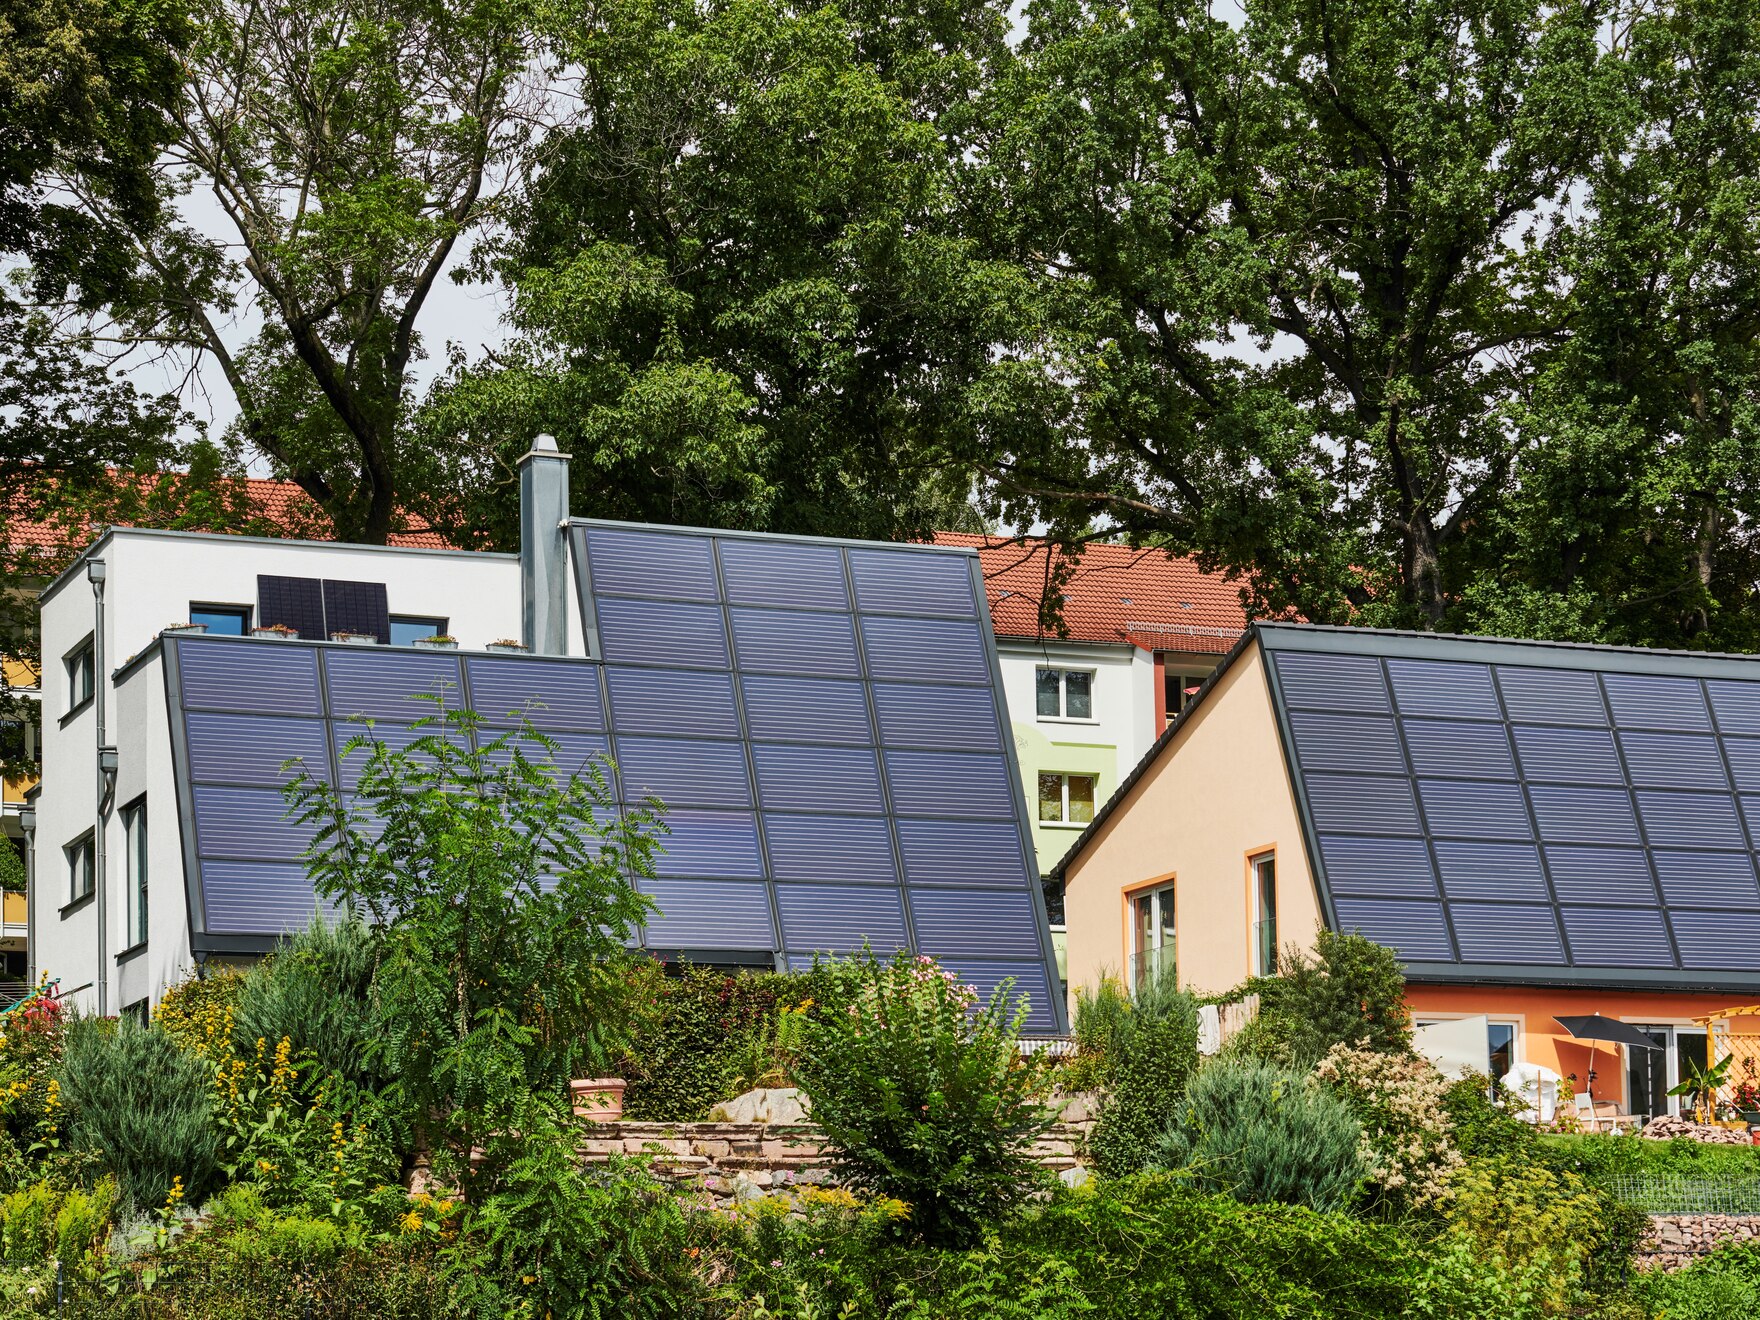 Foto von Einfamilienhäusern mit Solarpanelen auf den Dächern. Davor sieht man einen Garten, dahinter stehen Bäume.